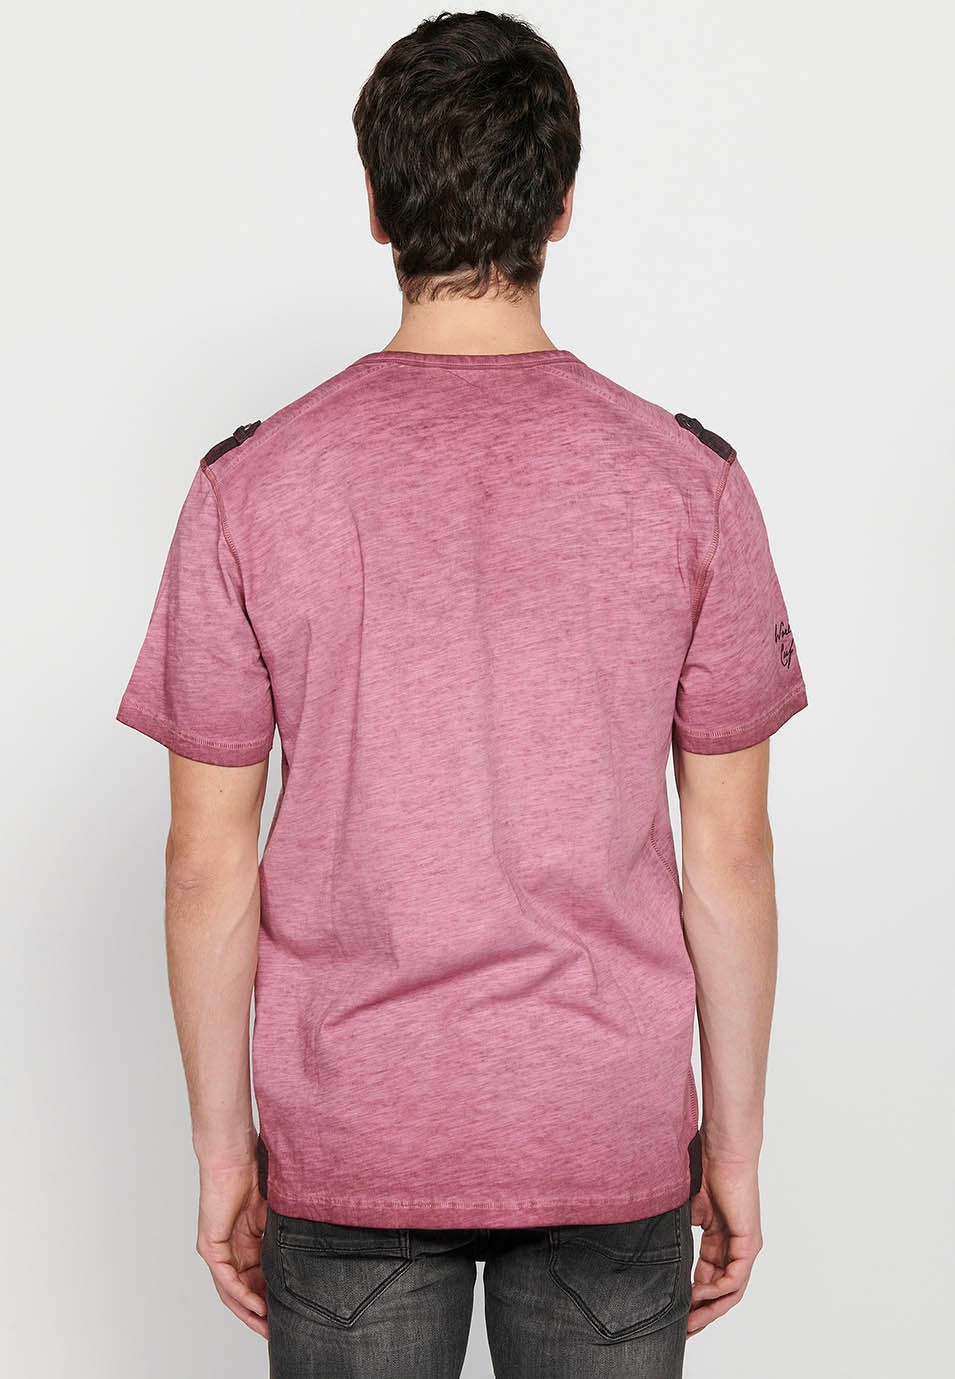 Kurzärmliges Herren-T-Shirt aus Baumwolle mit Rundhalsausschnitt, geknöpfter Öffnung und kastanienbraunem Detail auf der Vorderseite 5